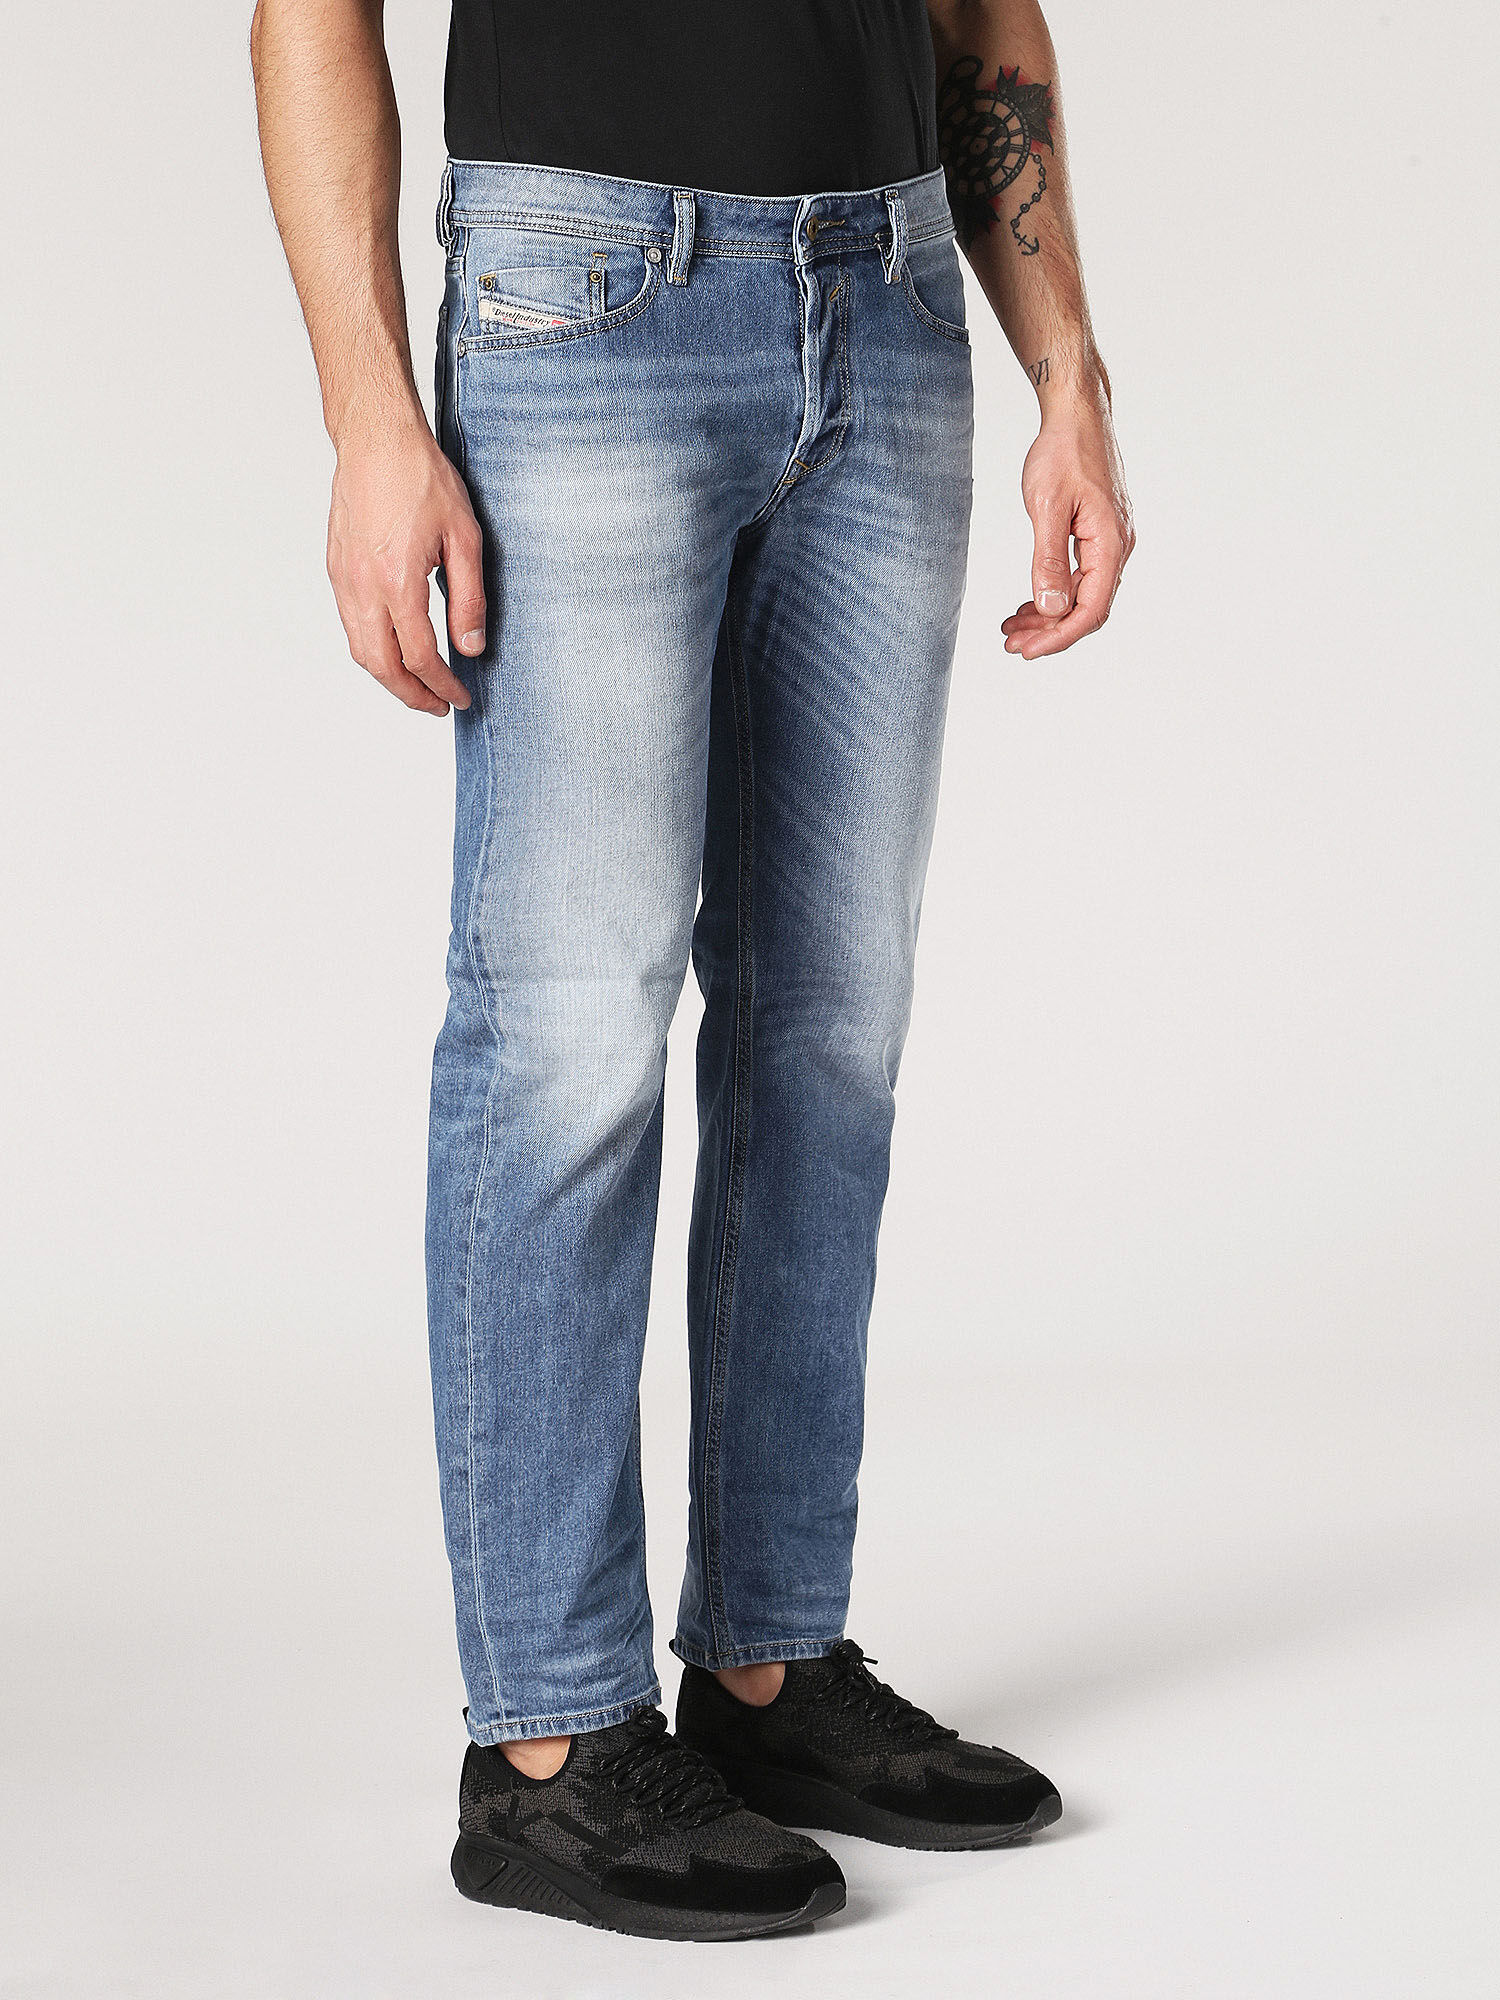 lane bryant skinny genius fit jeans